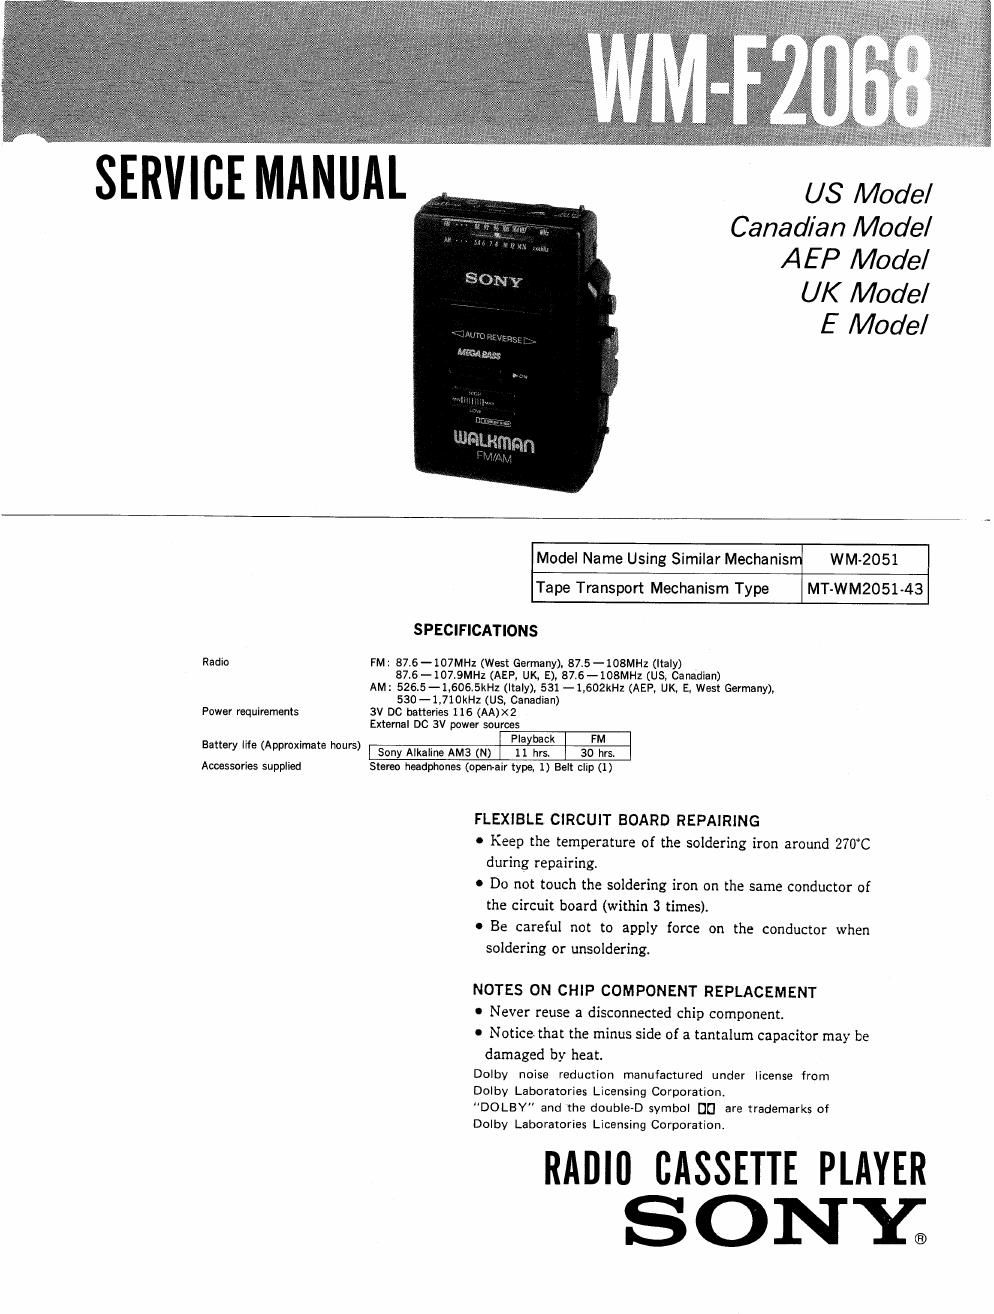 sony wm f 2068 service manual